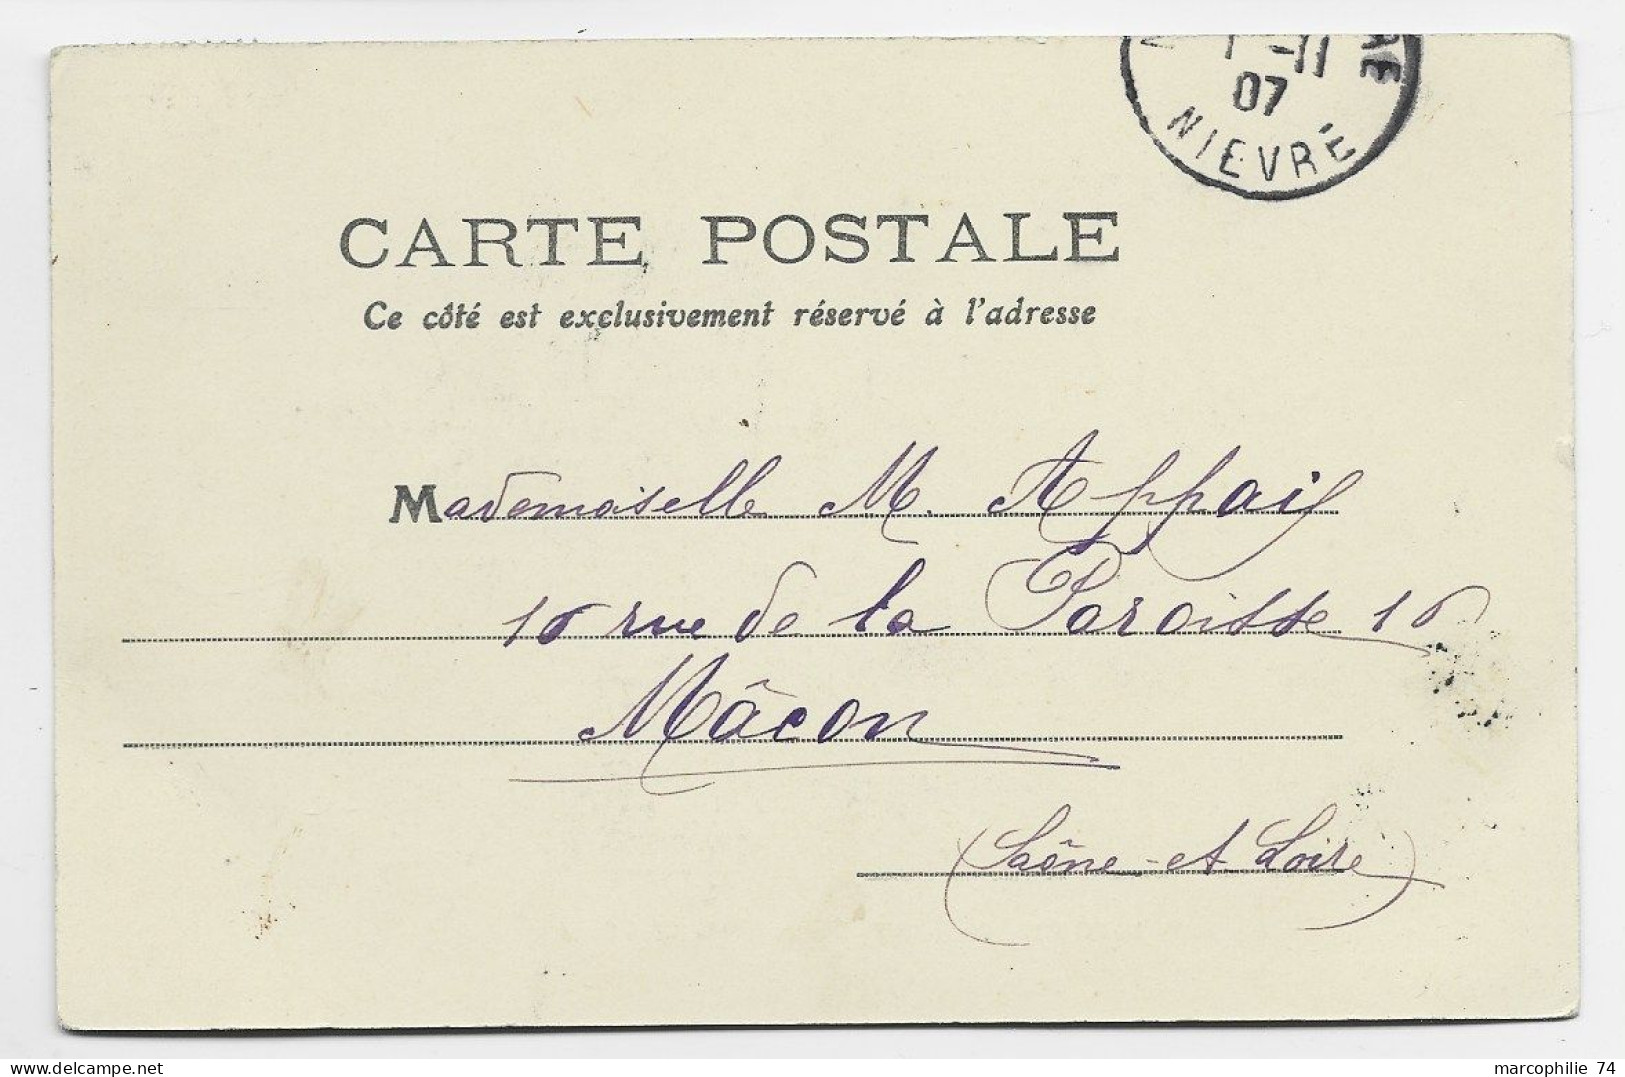 SEMEUSE 5C AU RECTO CARTE TIMBRE A DATE ENTREPOT DE CERGY LA TOUR 1 NOV 1907 NIEVRE RARE - Bahnpost